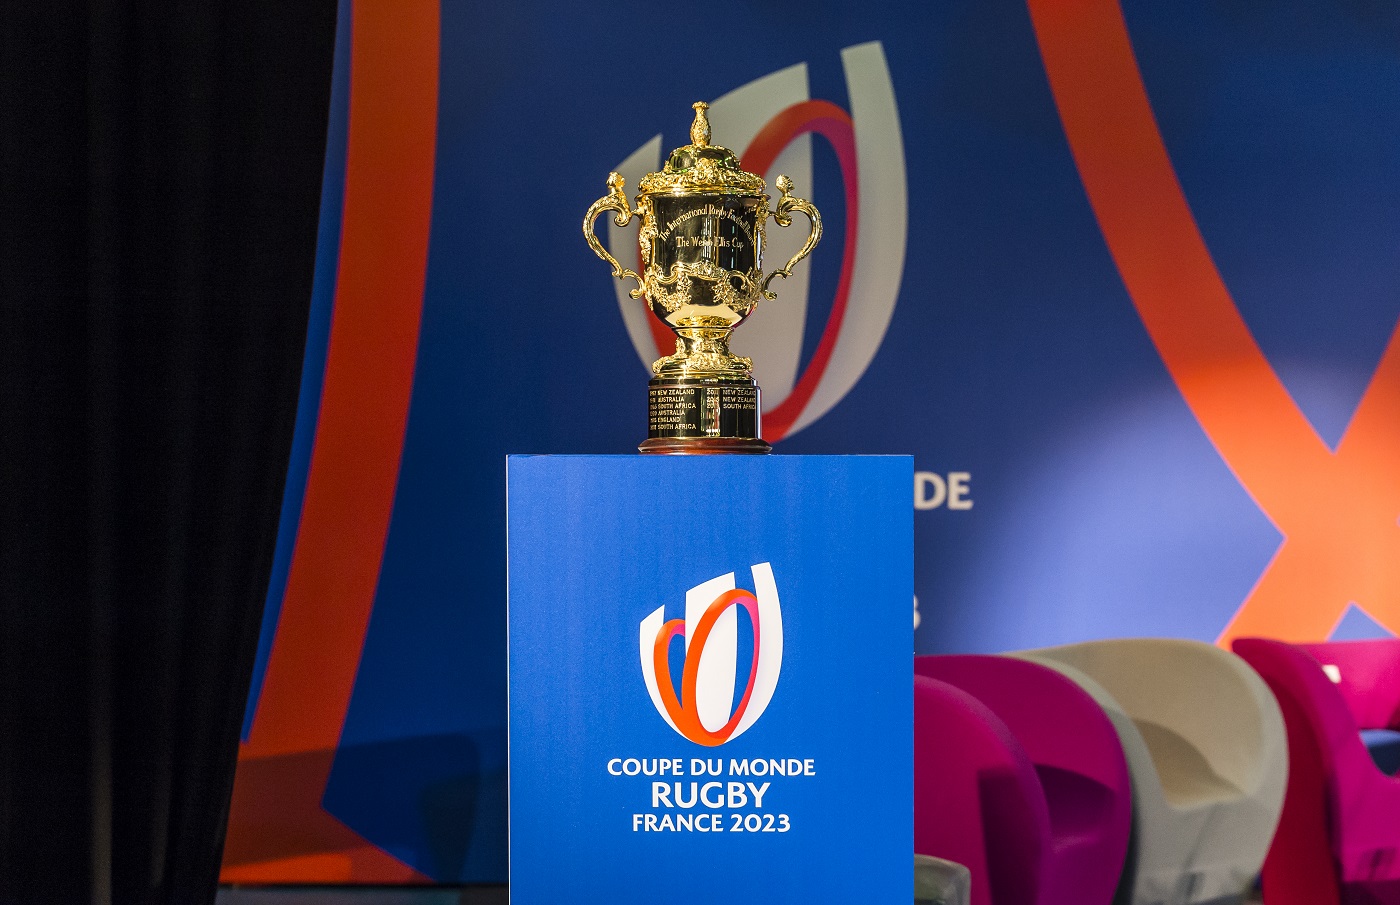 Coupe De France 2023 Le rang 1 des sponsors officiels de la Coupe du Monde de Rugby France